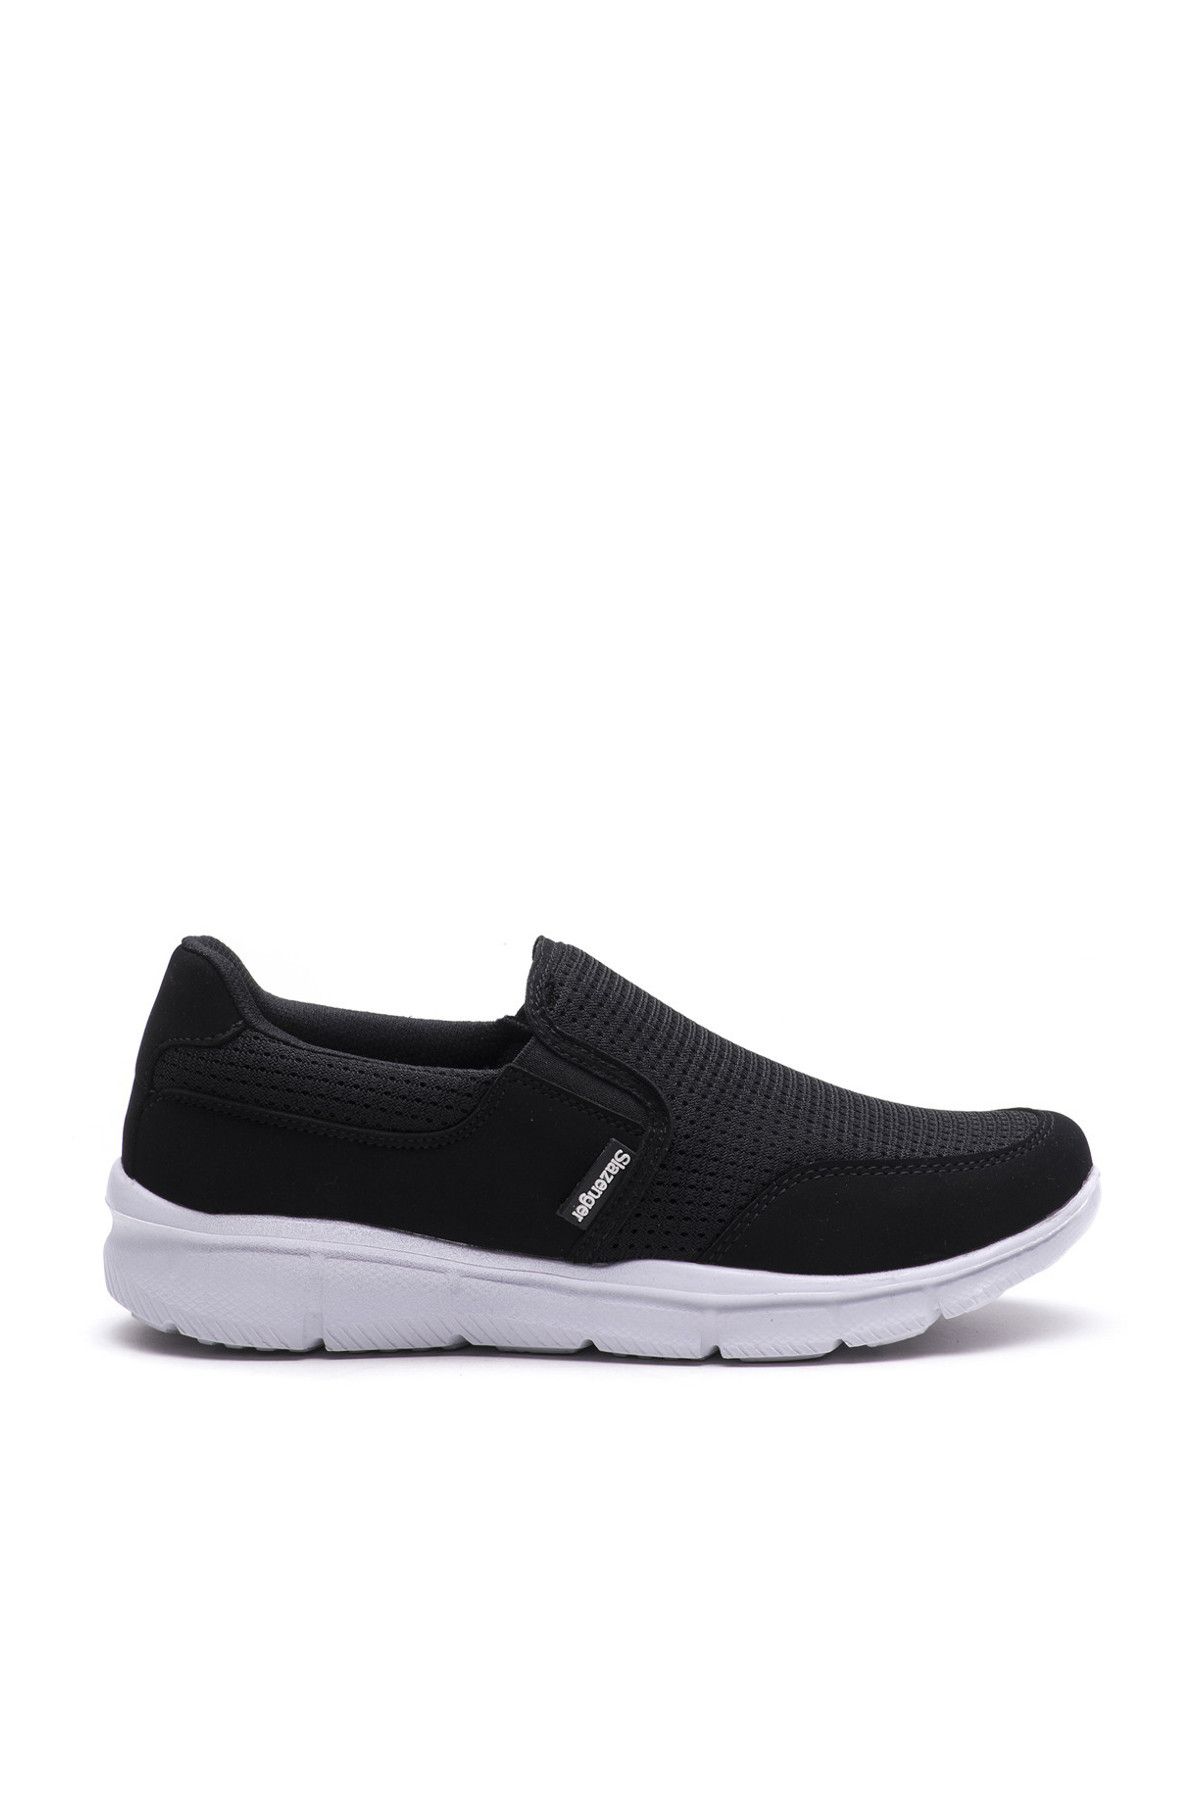 Slazenger Eren Sneaker Kadın Ayakkabı Siyah / Beyaz